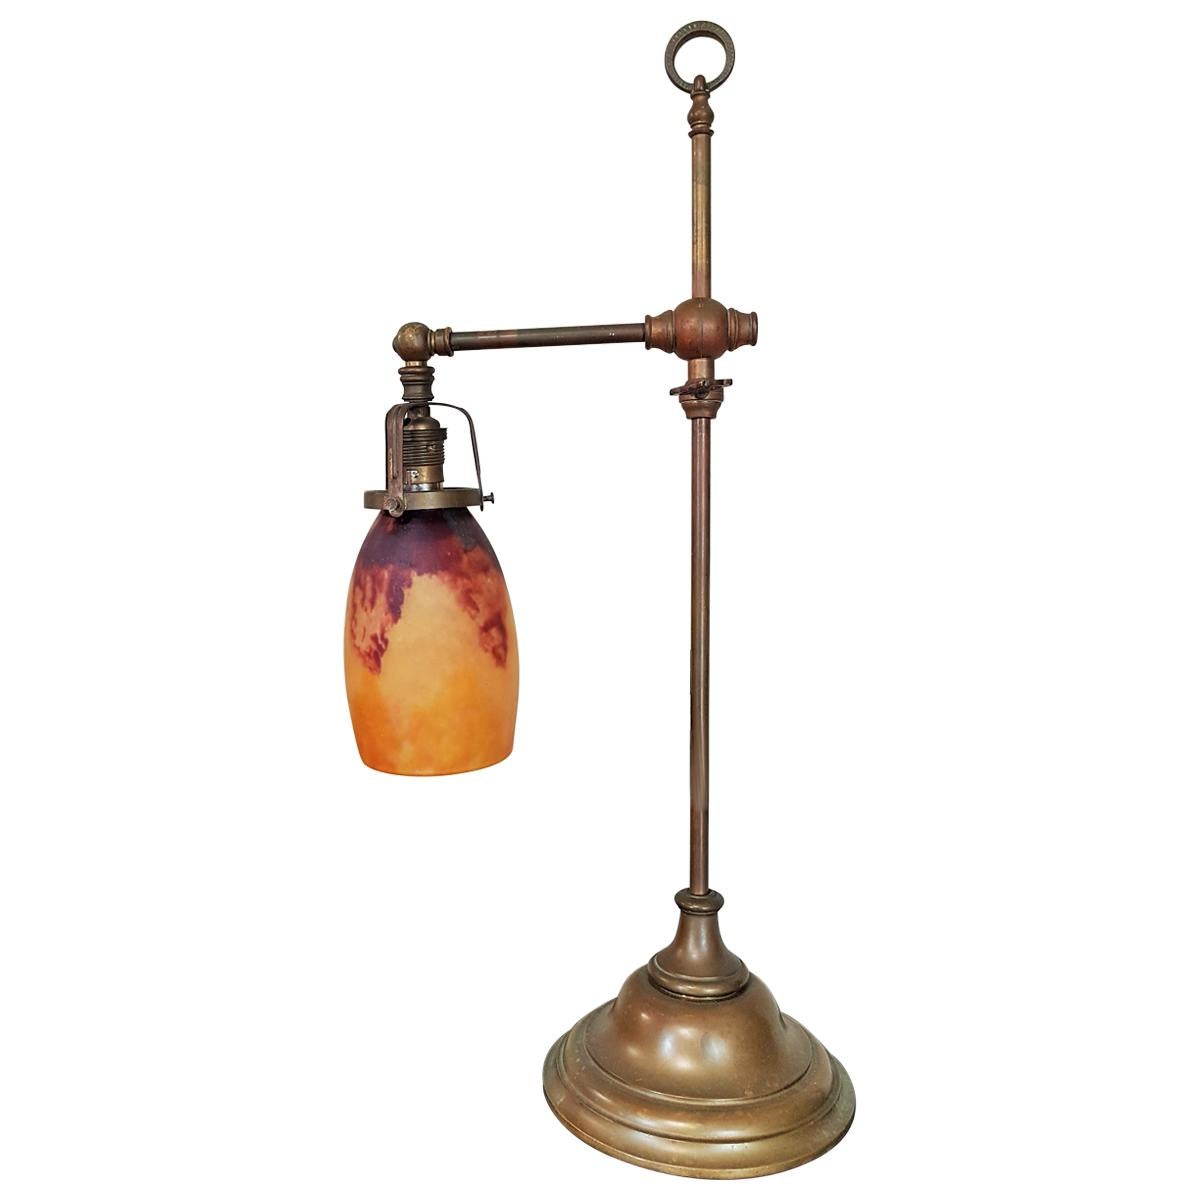 French Daum Signed Art Nouveau Pate de Verre Desk Lamp, 1900